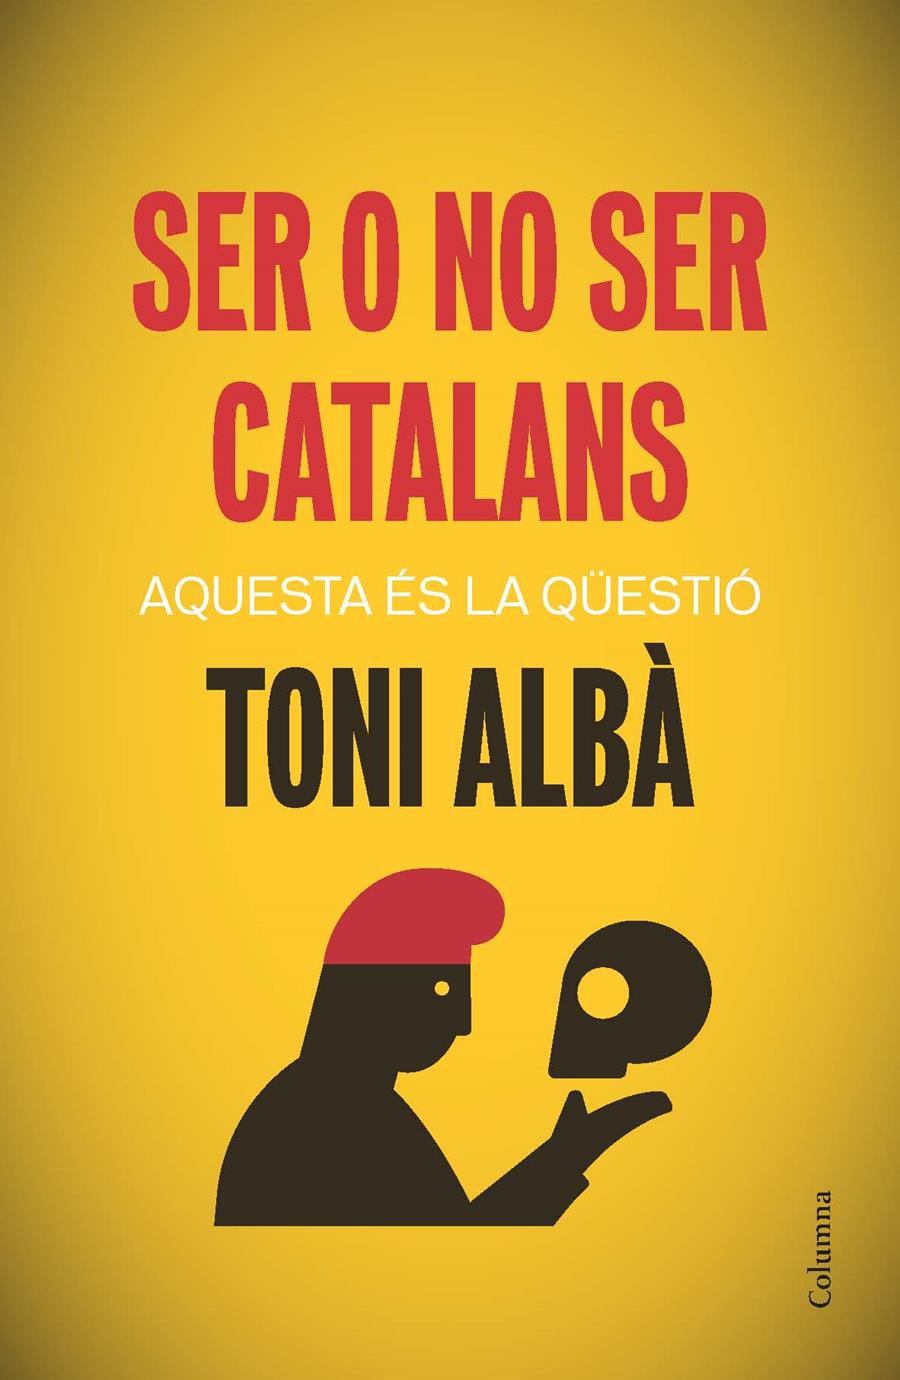 Ser o no ser catalans | Toni Albà Noya | Cooperativa autogestionària